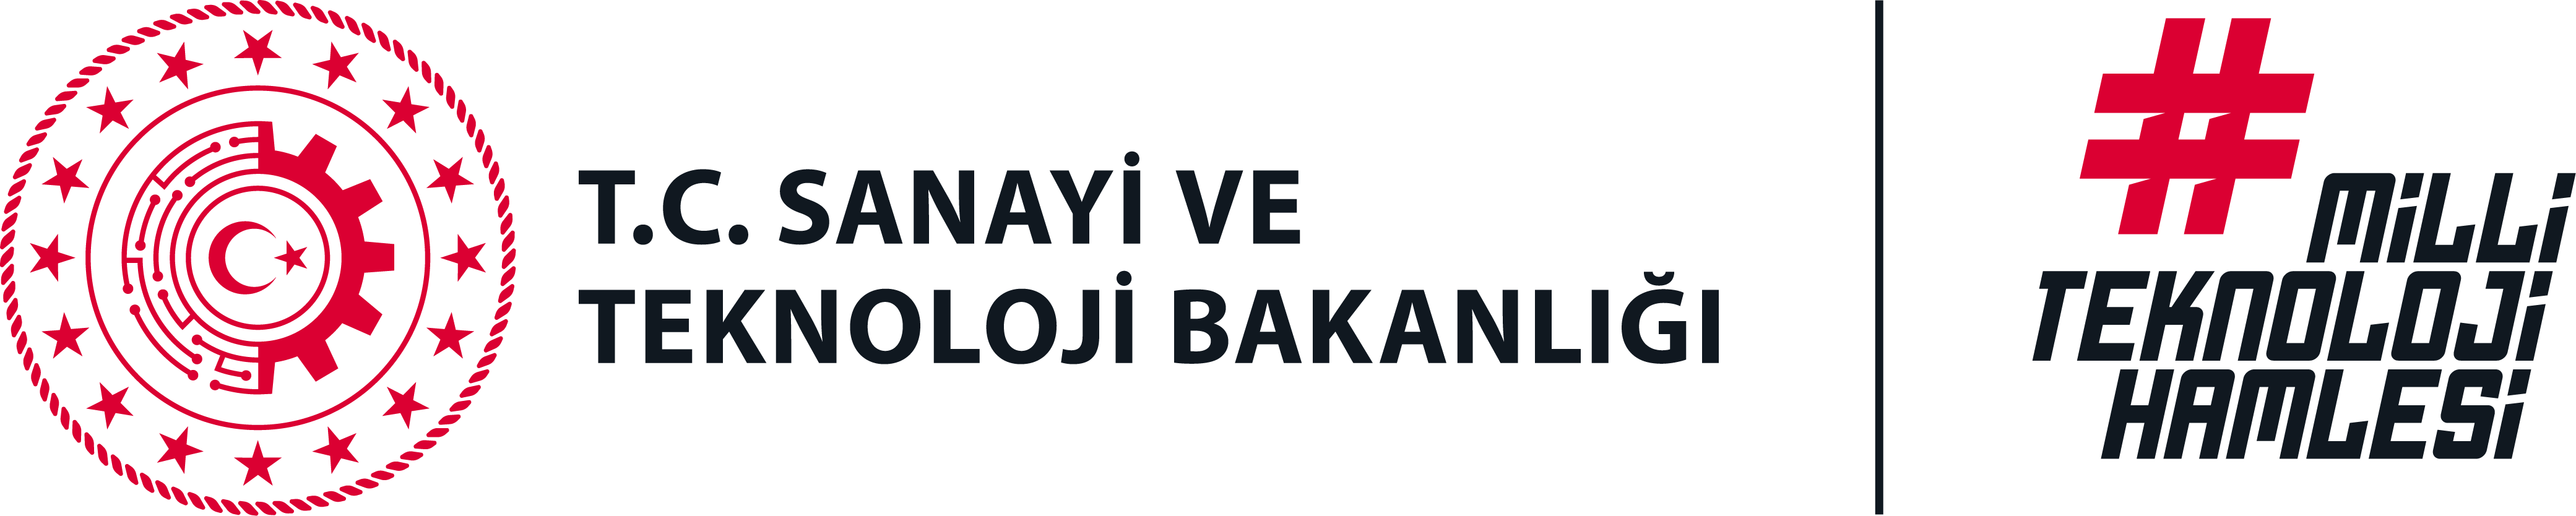 Sanayi ve Teknoloji Bakanlığır Logo